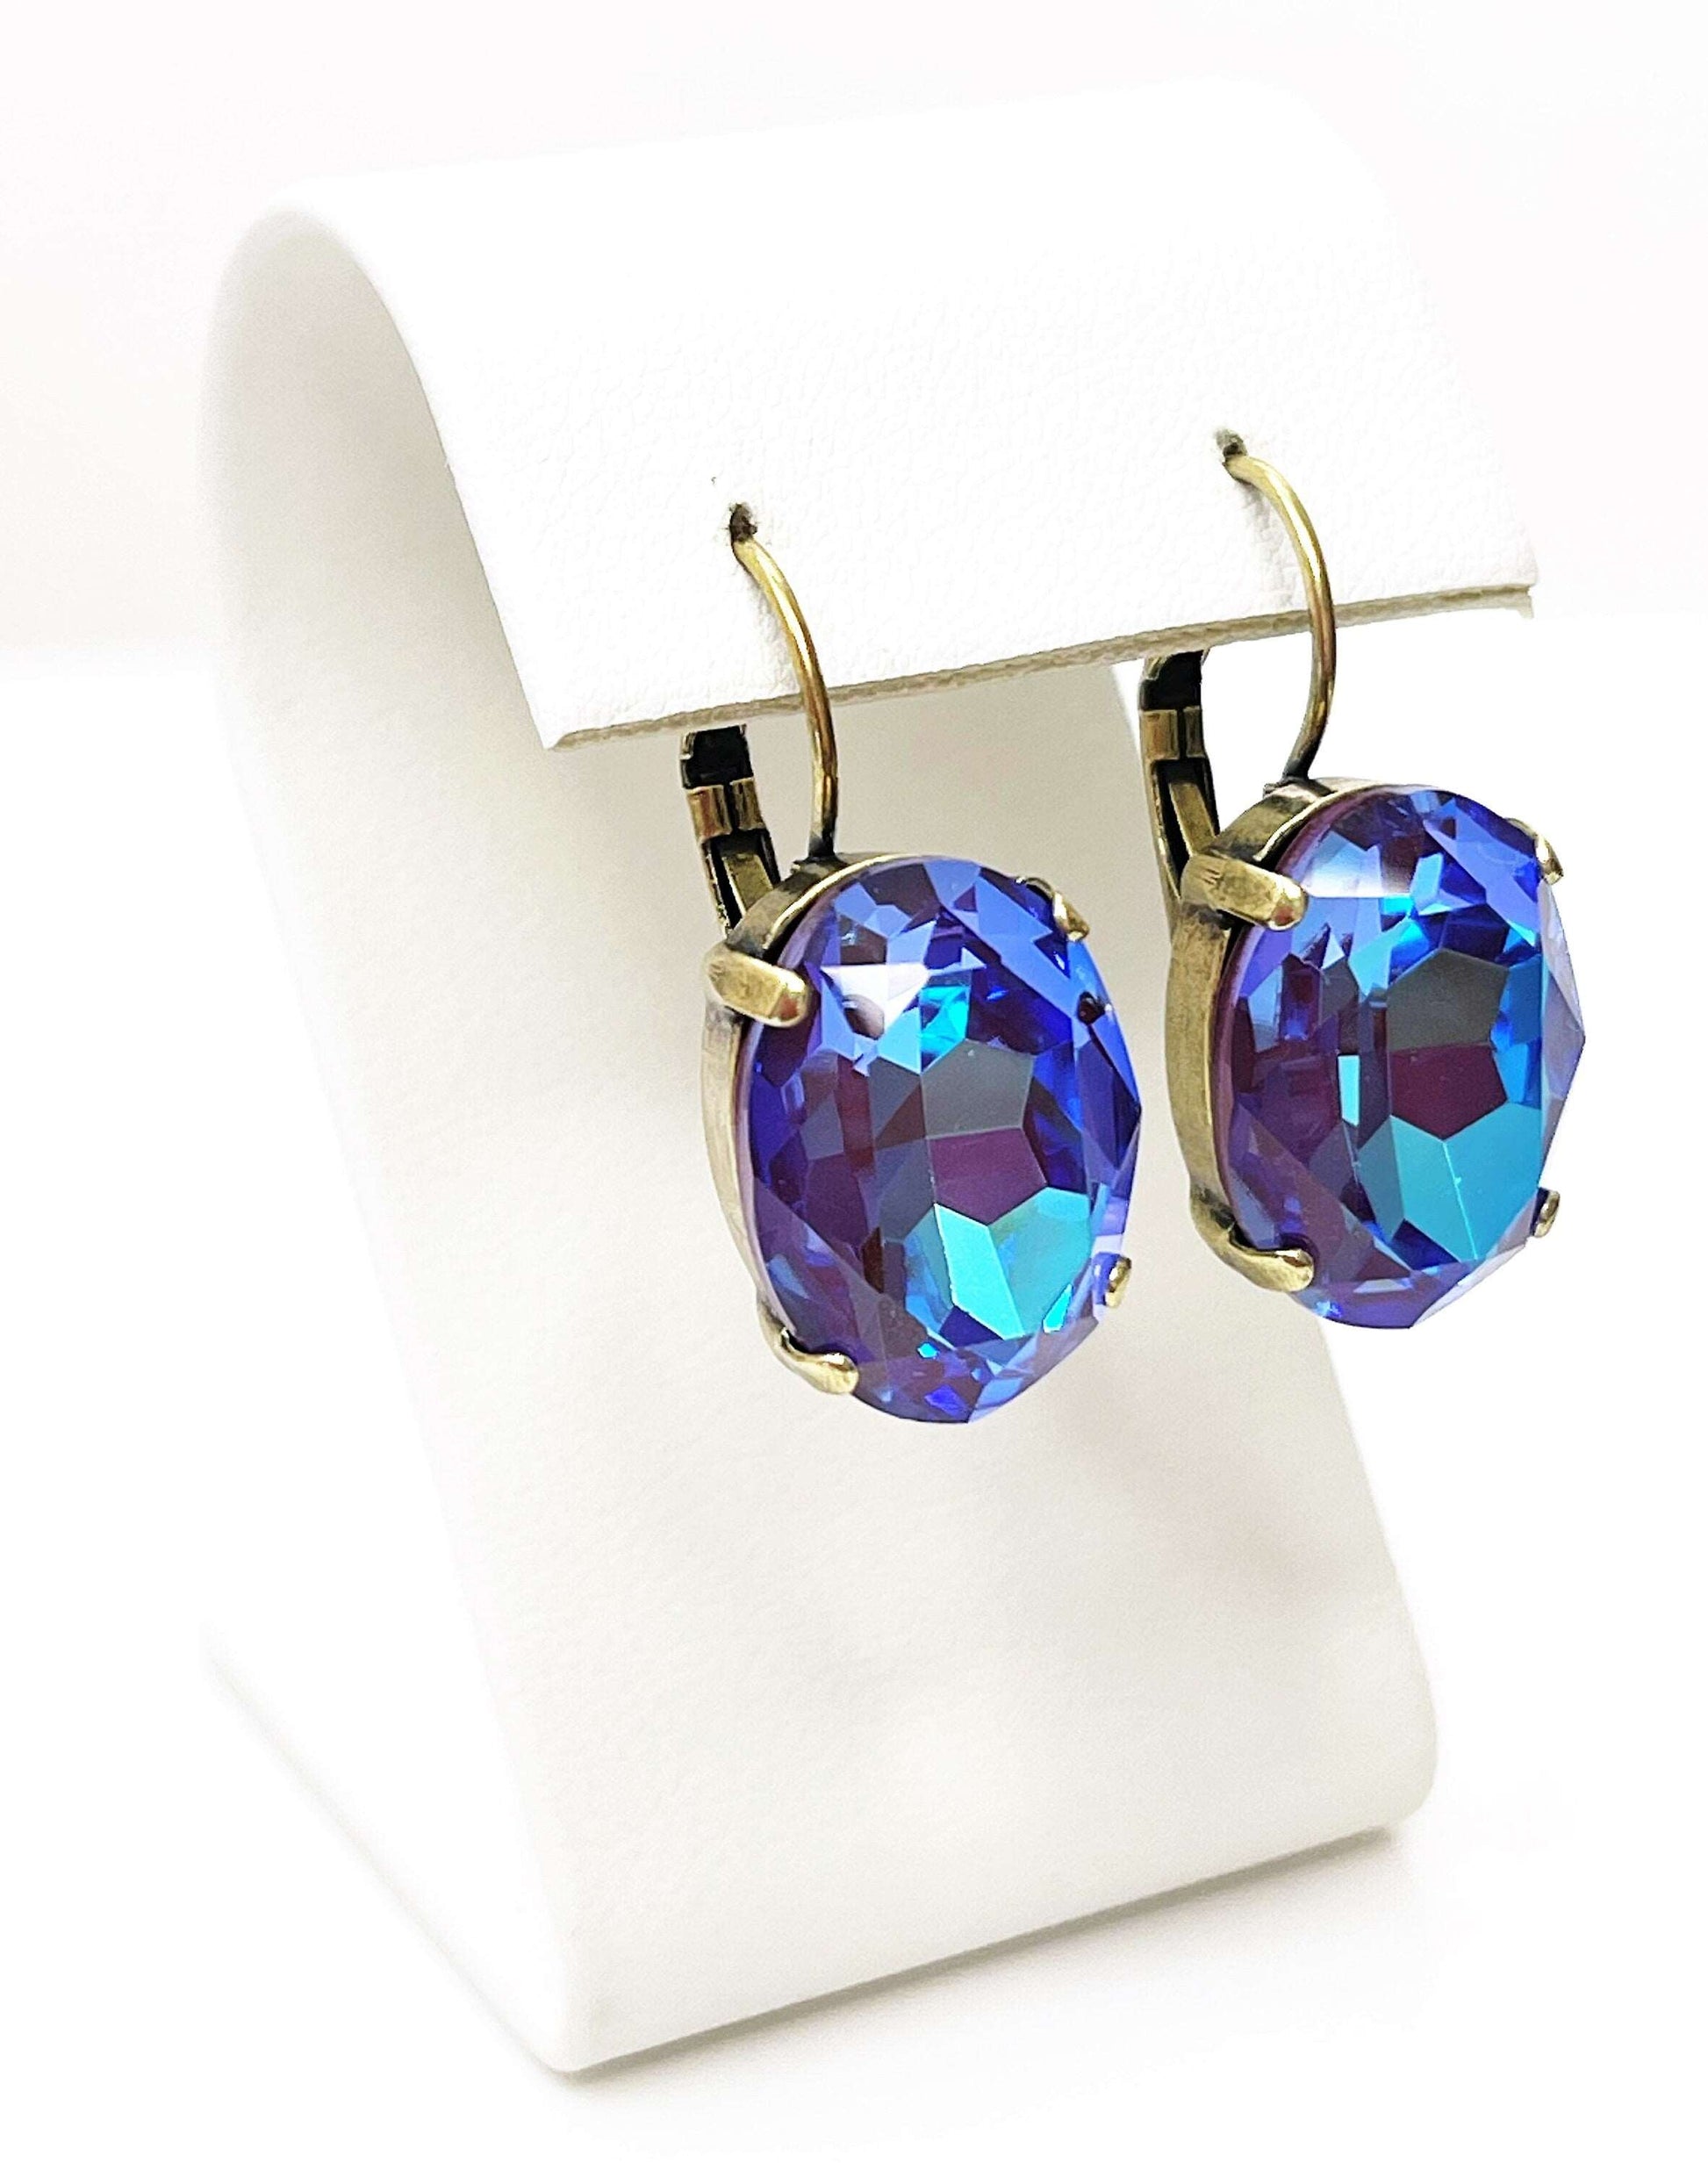 Blue Purple Georgian Crystal Earrings | Statement Oval Drops